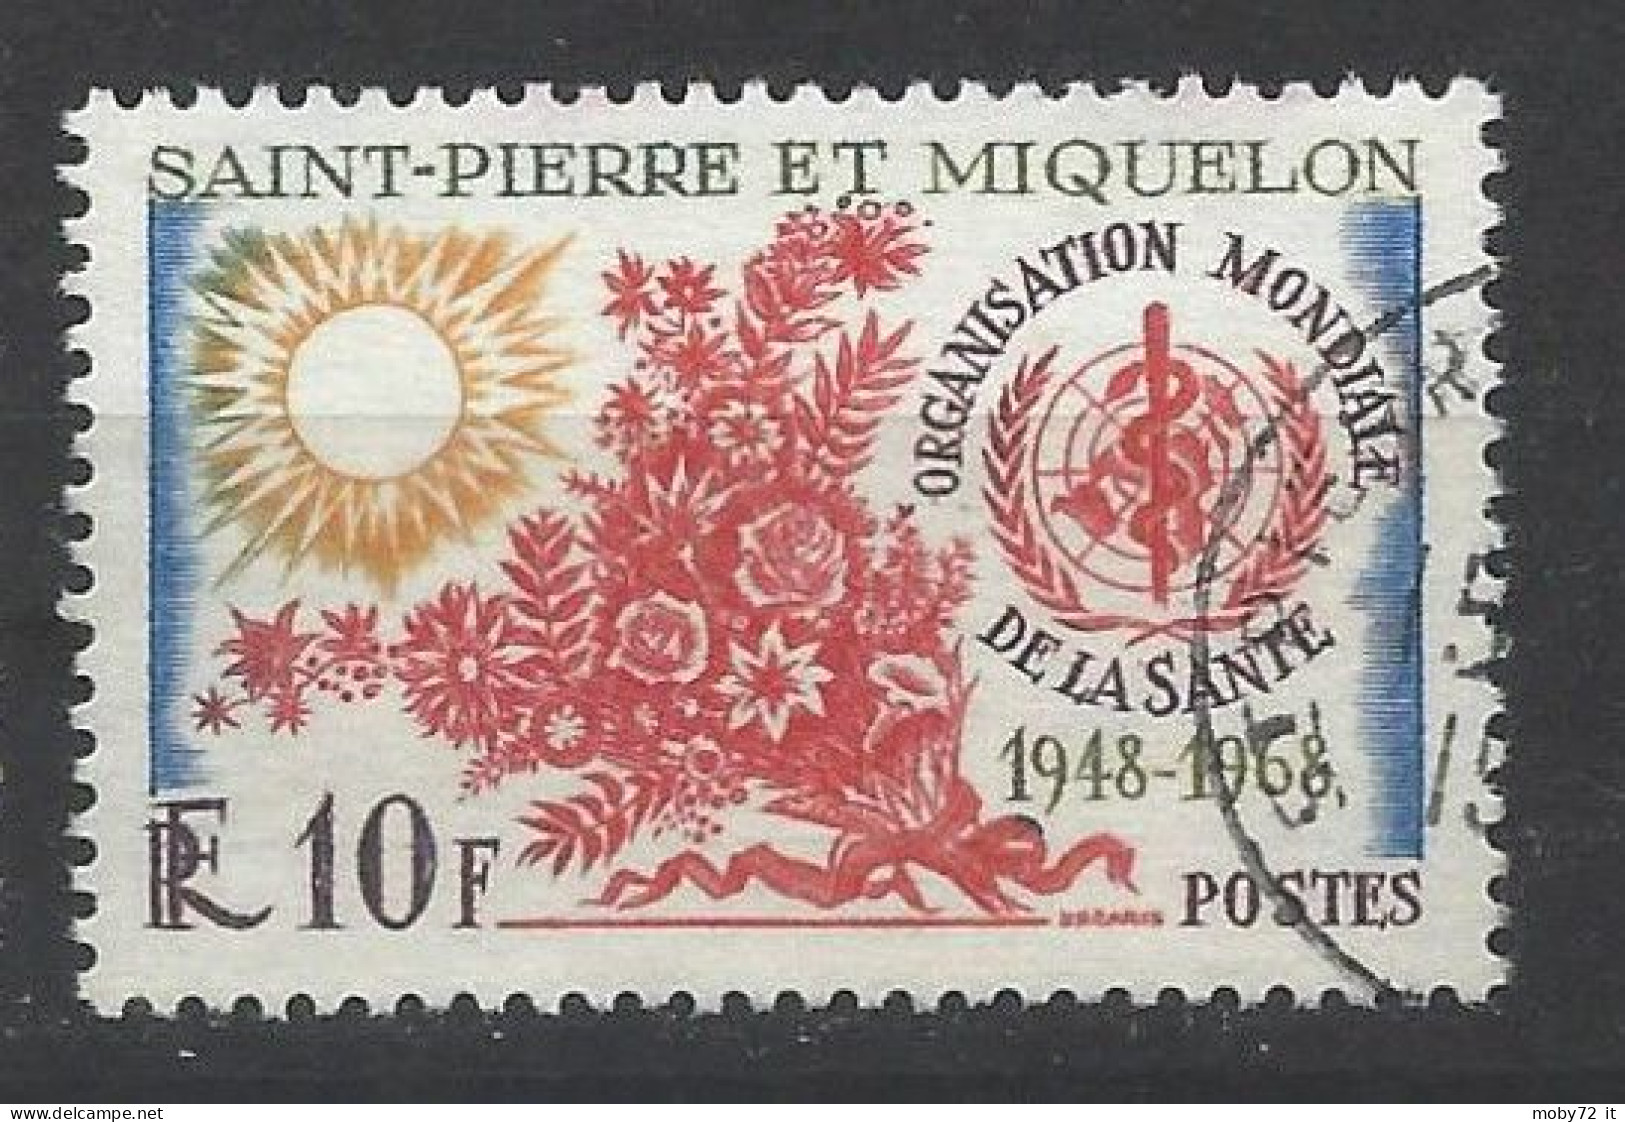 Saint-Pierre Et Miquelon - 1968 - Usato/used - WHO - Mi N. 425 - Storia Postale